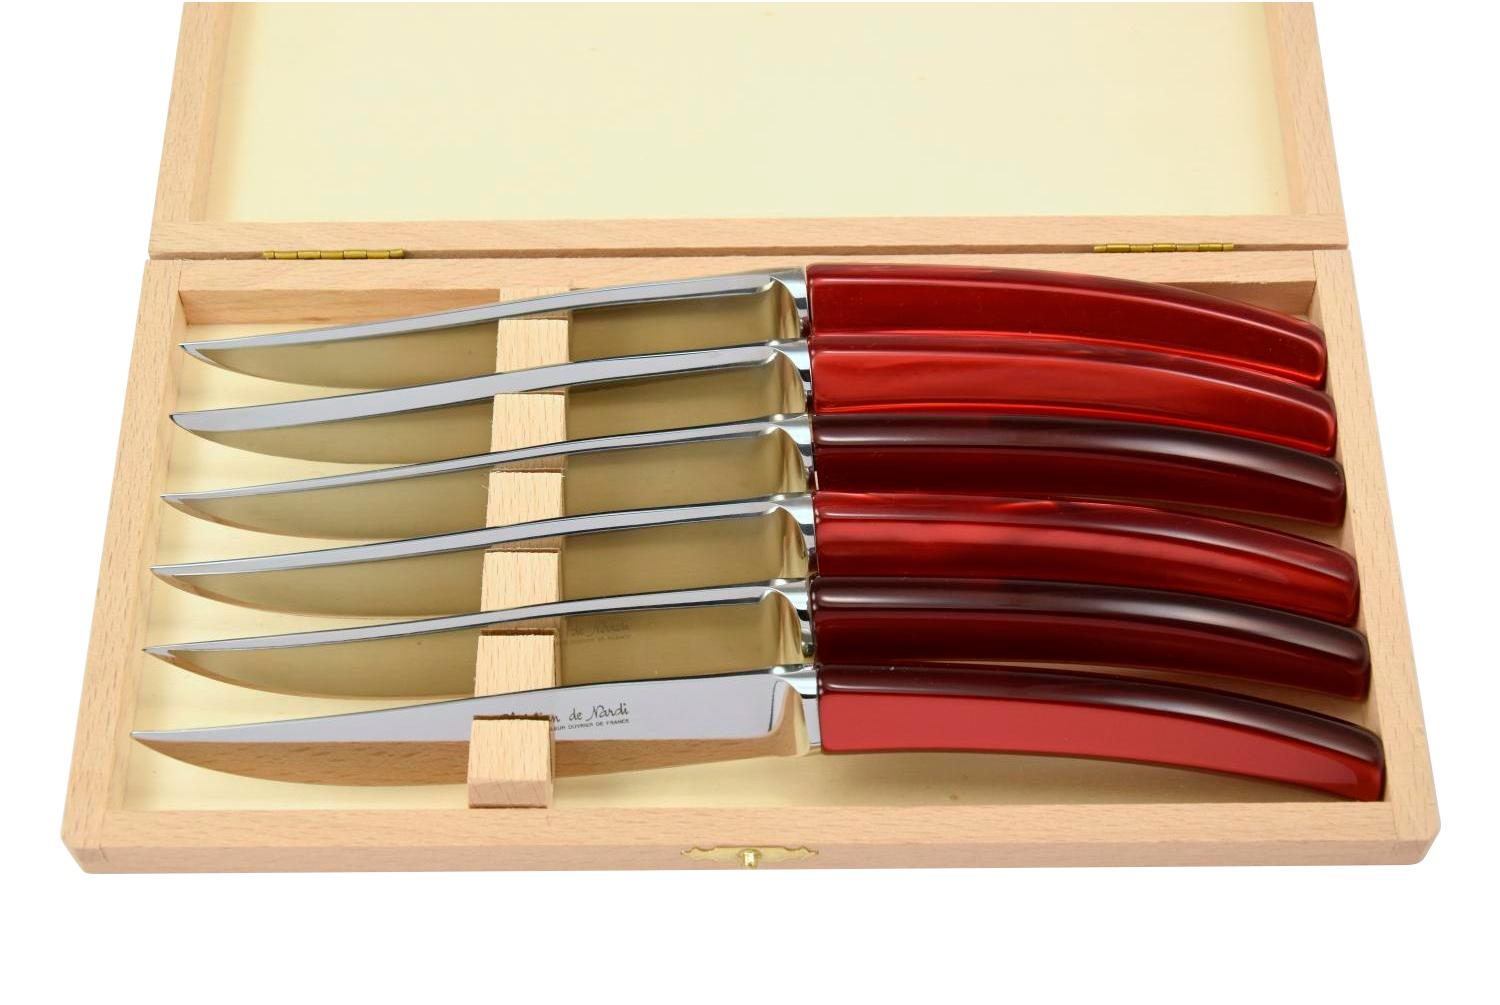 MODELE SILENE
couteau table par 6
manche plexi rouge nacré